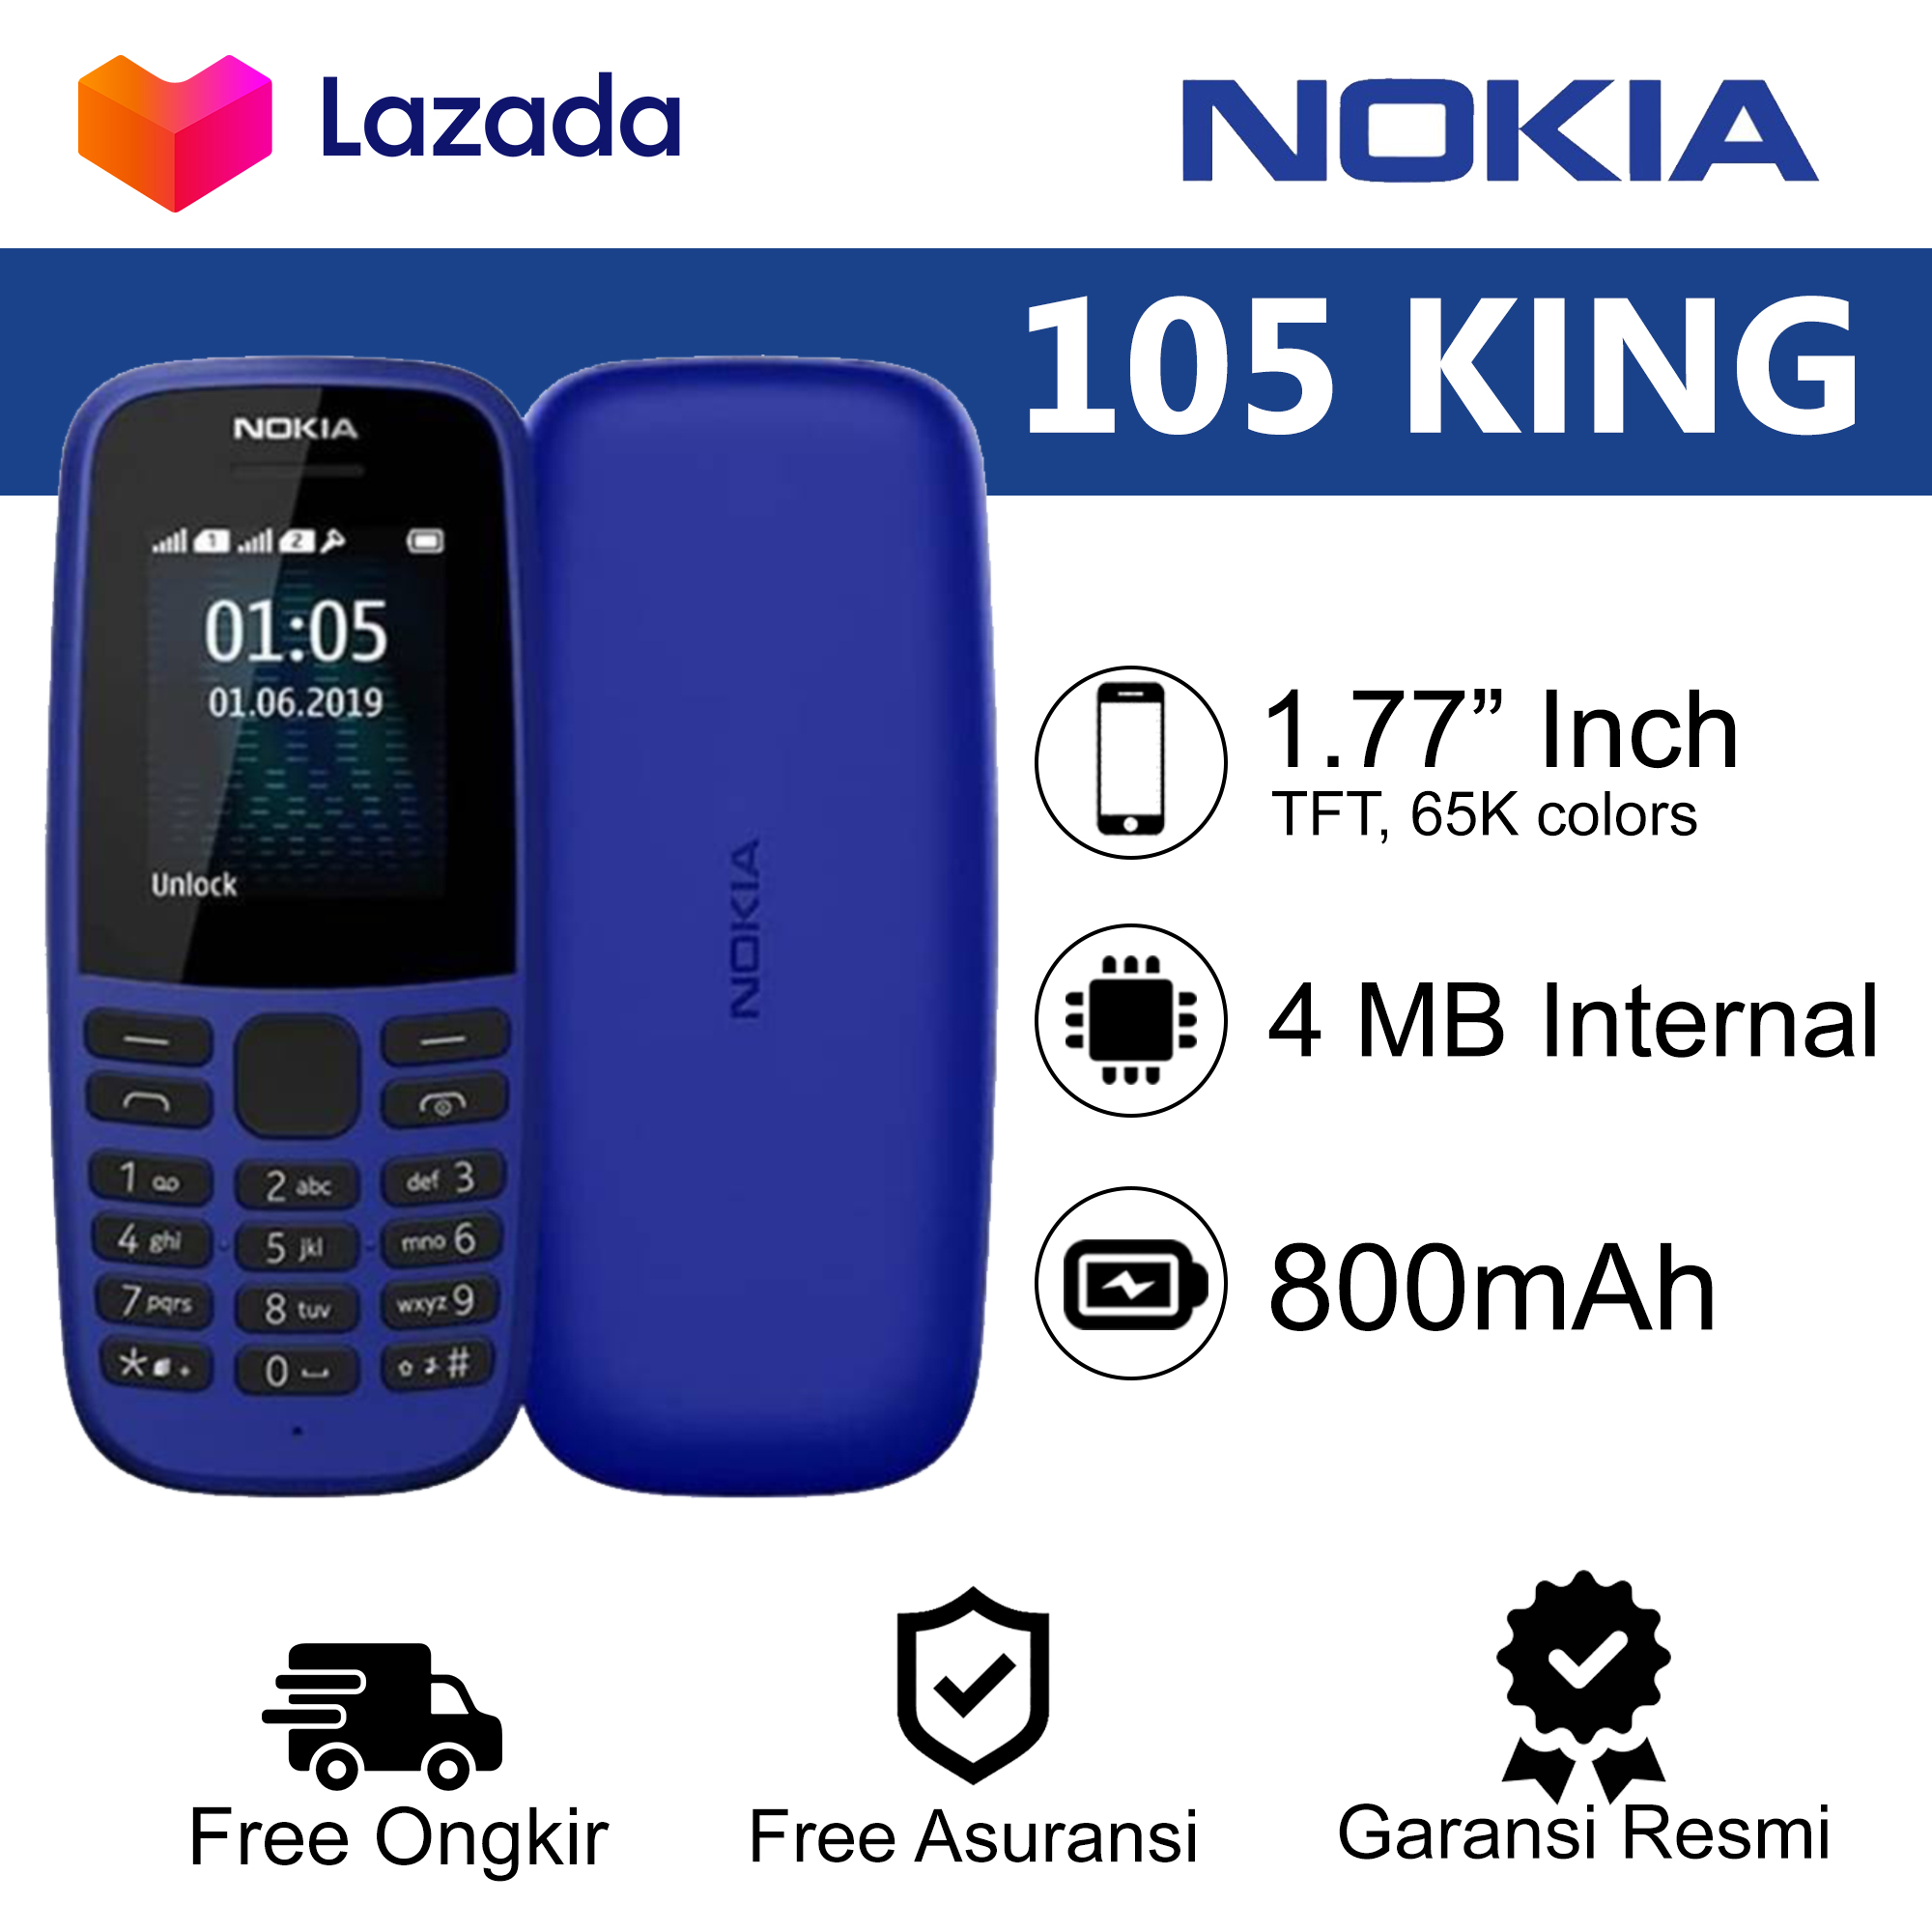 Nokia 105 King 1 77 Inch Dual Sim Garansi Resmi Lazada Indonesia